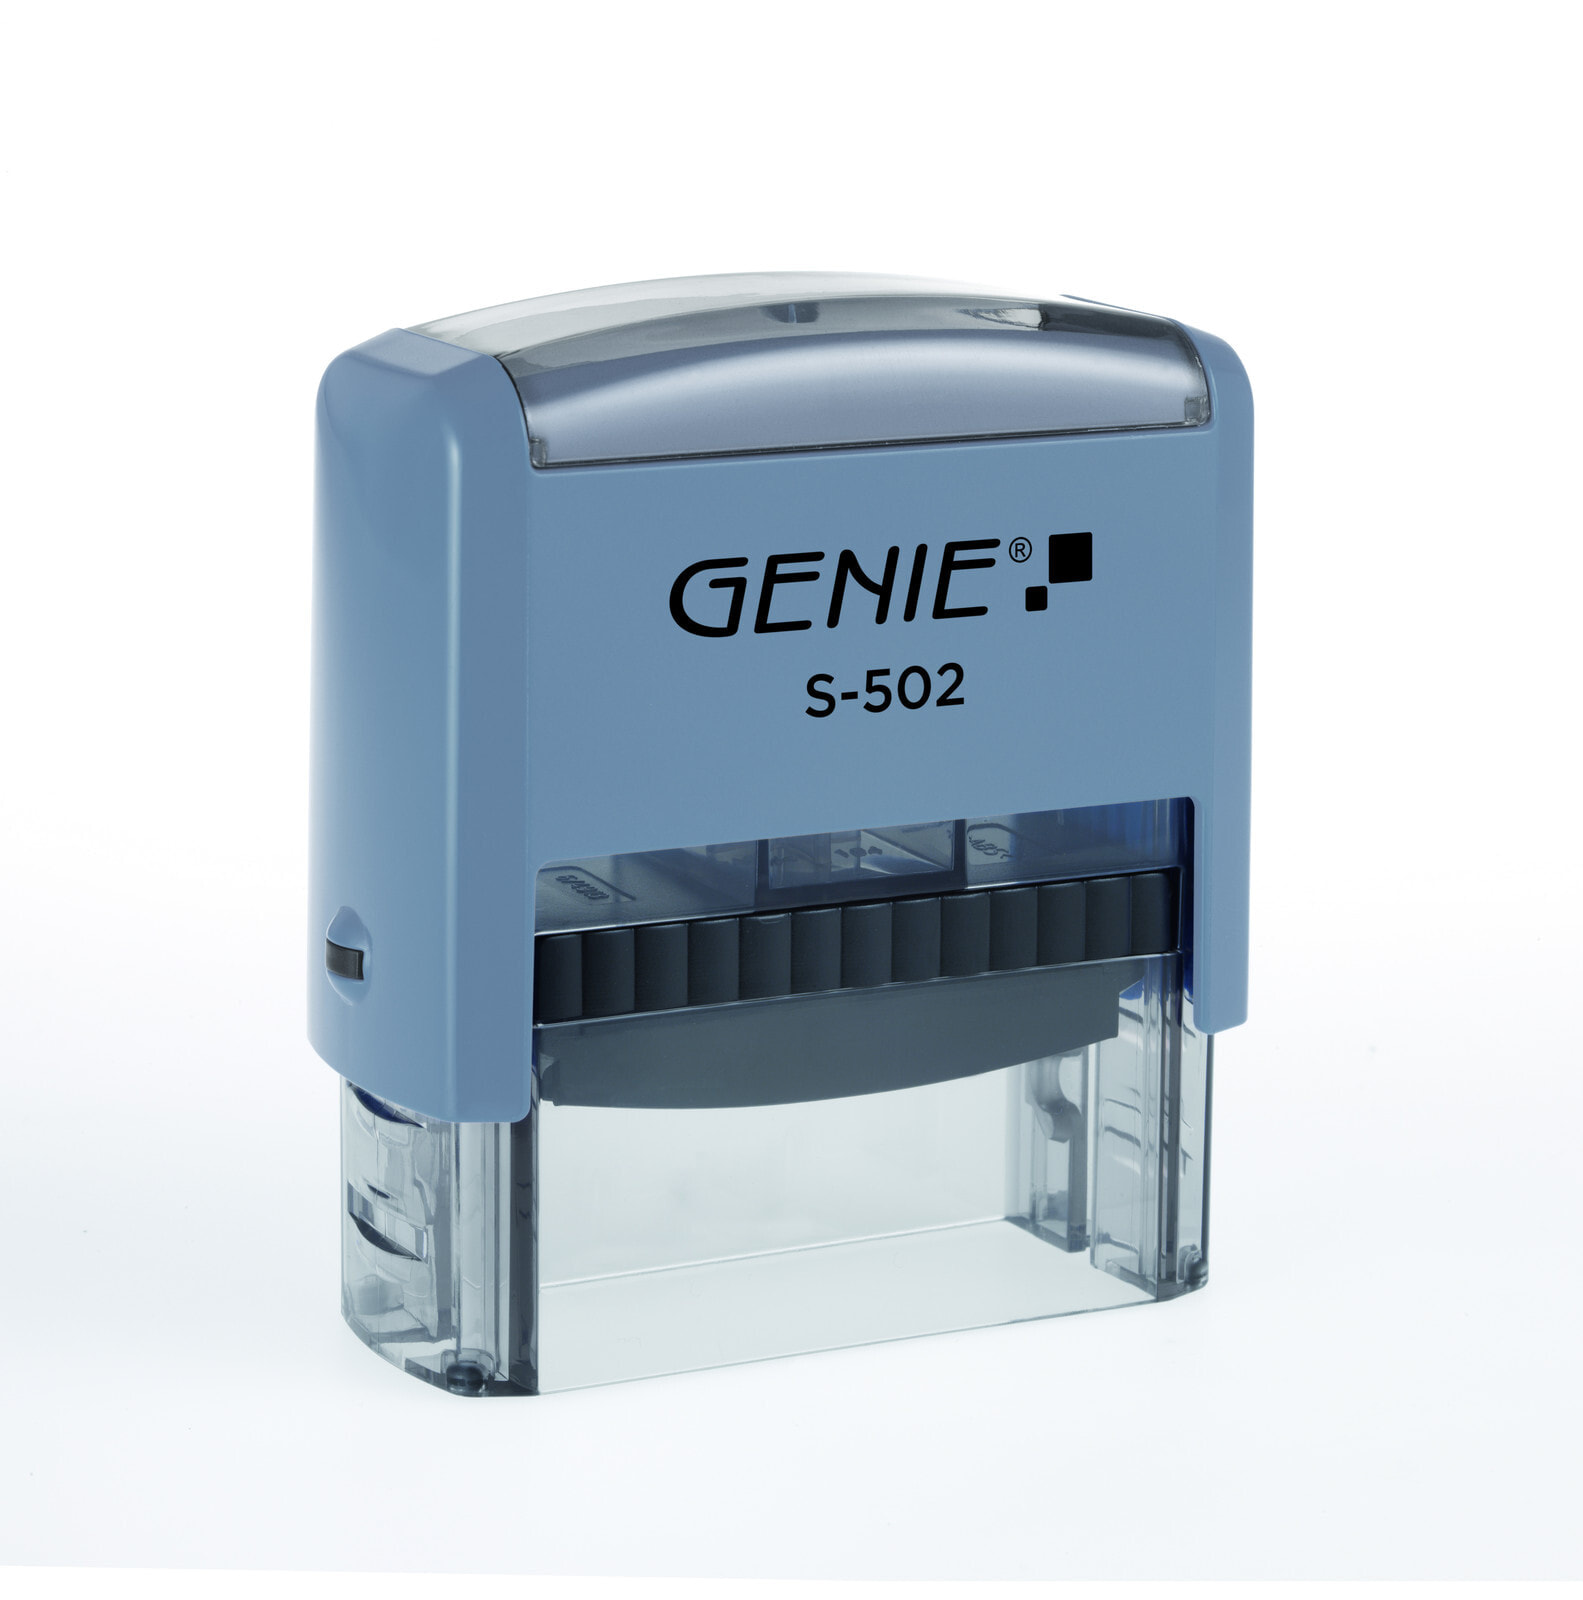 Genie S-502 Автоматическое нанесение чернил Заказной штамп Пластик 12544